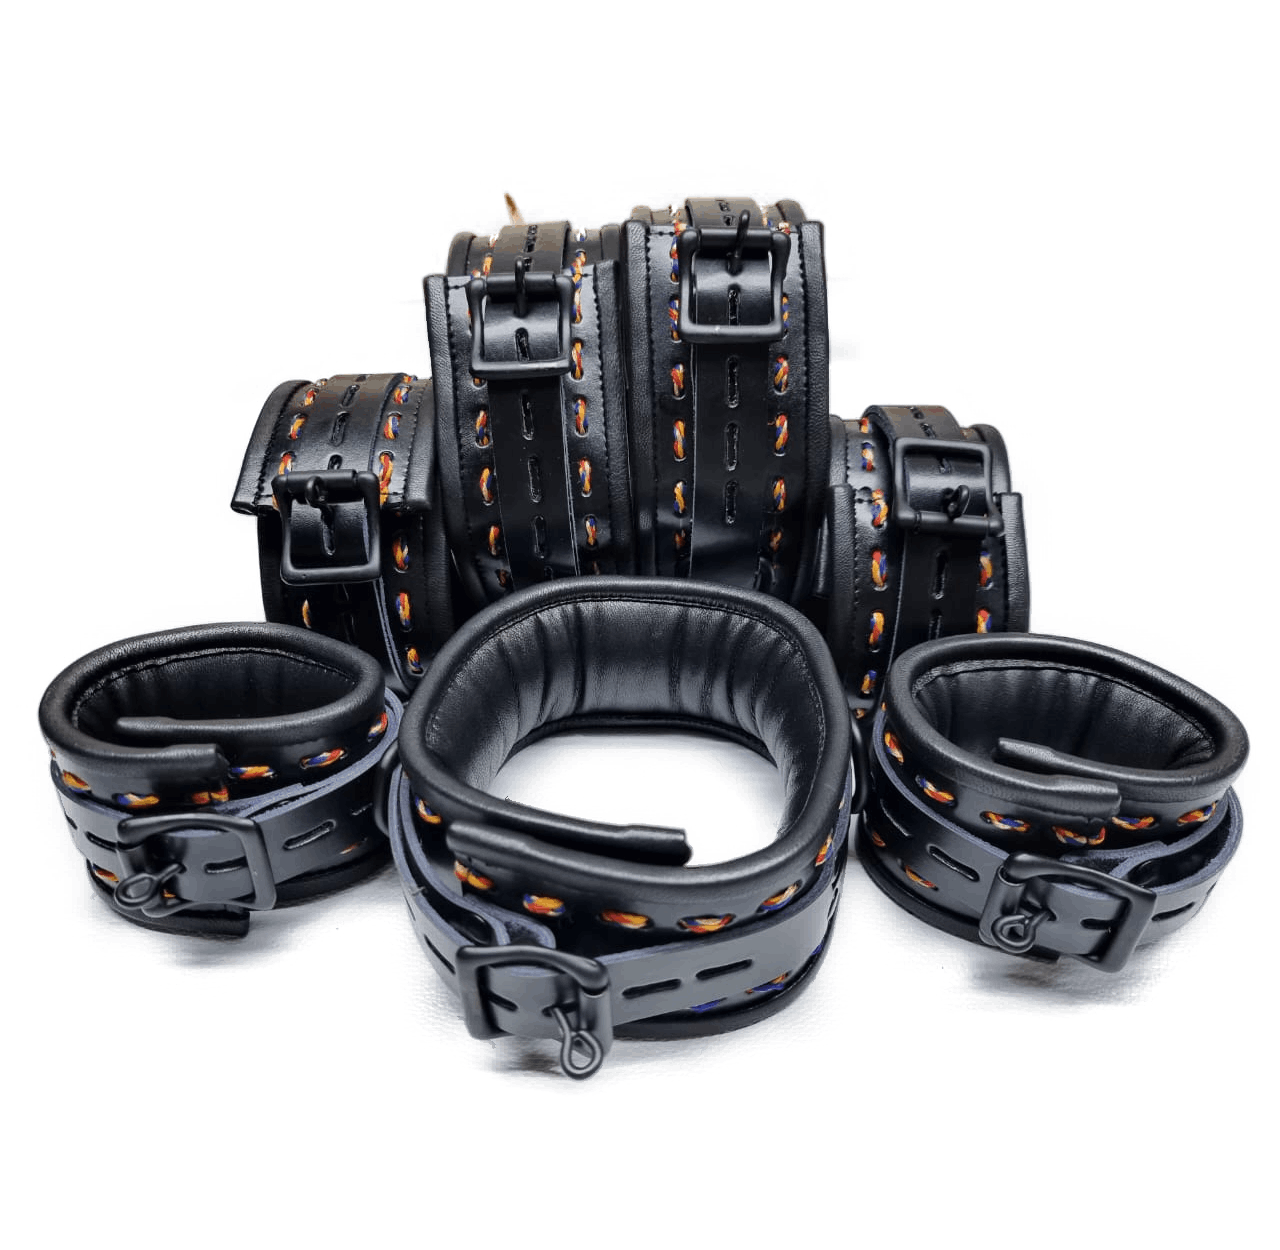 New Unique Design- Black Leather with Multi-Color Thread Complete Set of 7 Restraints - (REST7-BLK-RAIN).